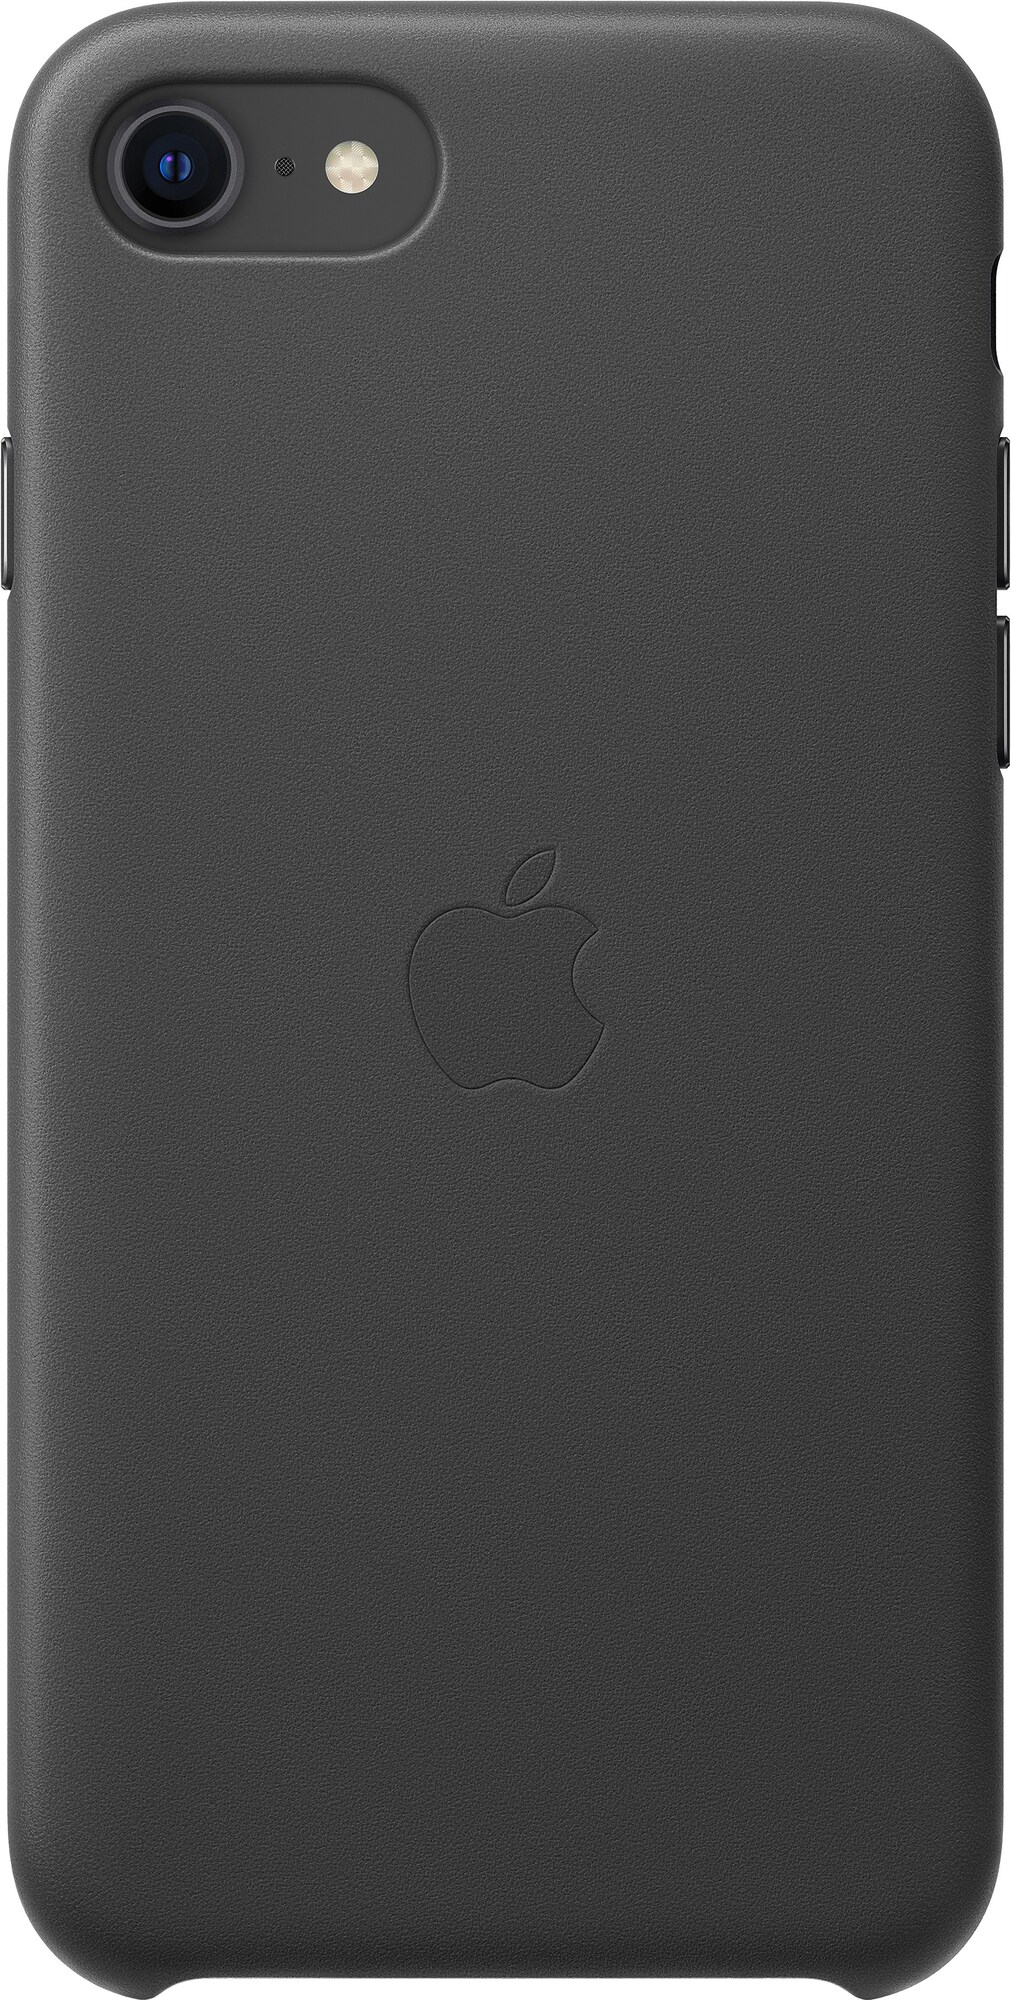 iPhone SE Gen. 2 lædercover (sort) | Elgiganten